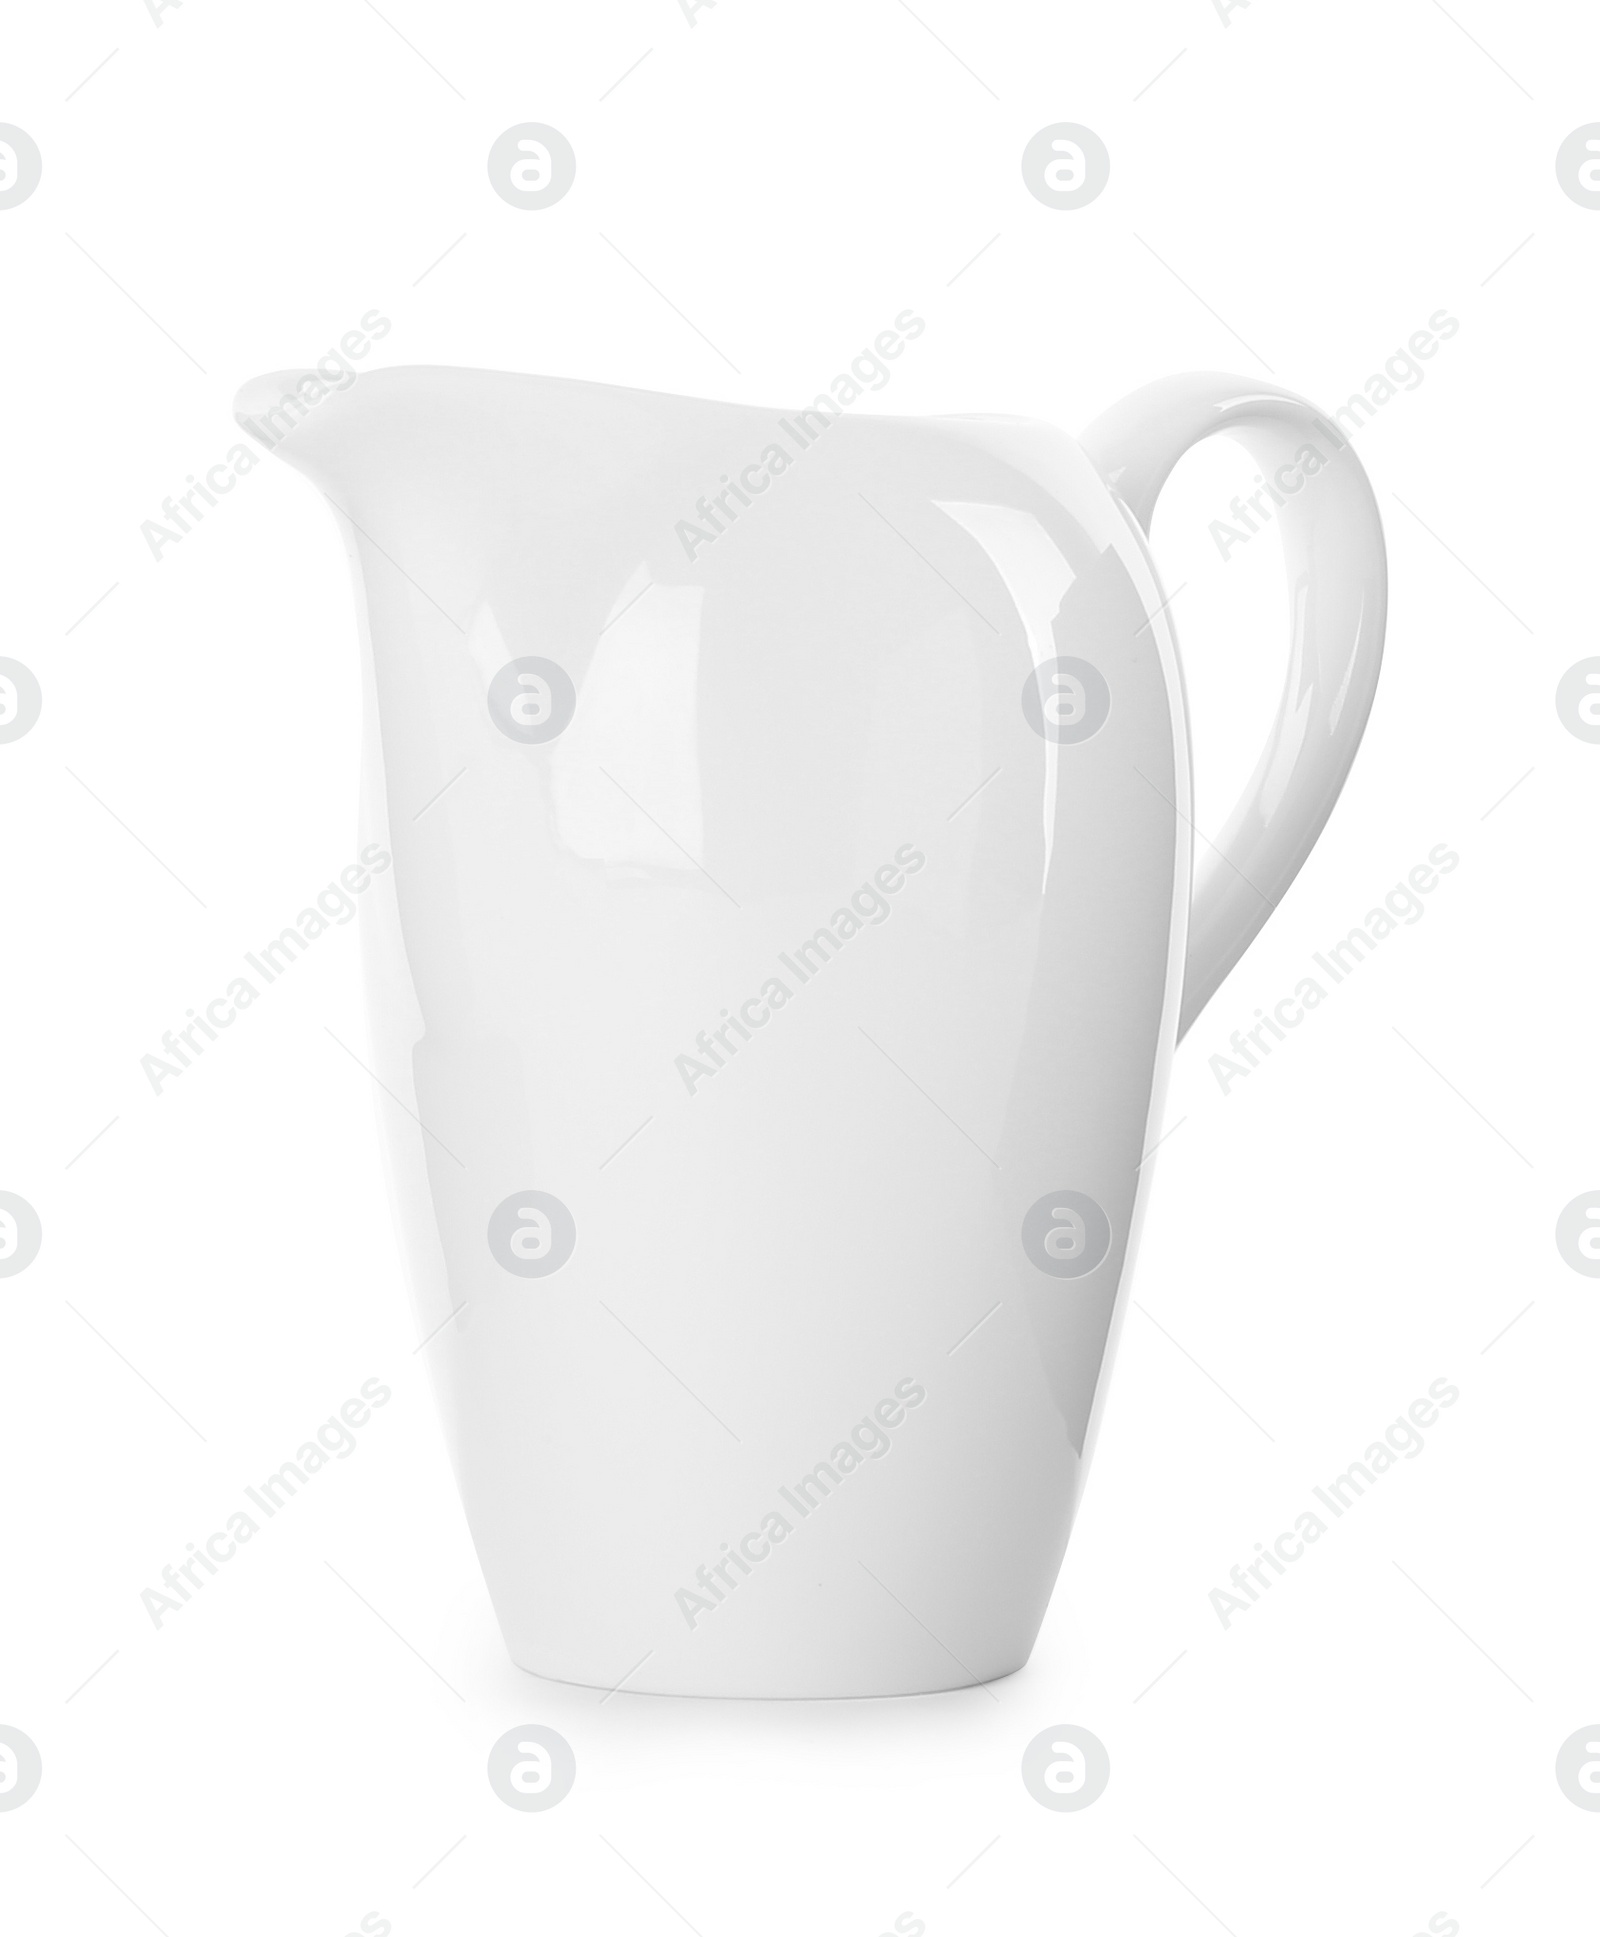 Photo of Stylish empty ceramic jug isolated on white